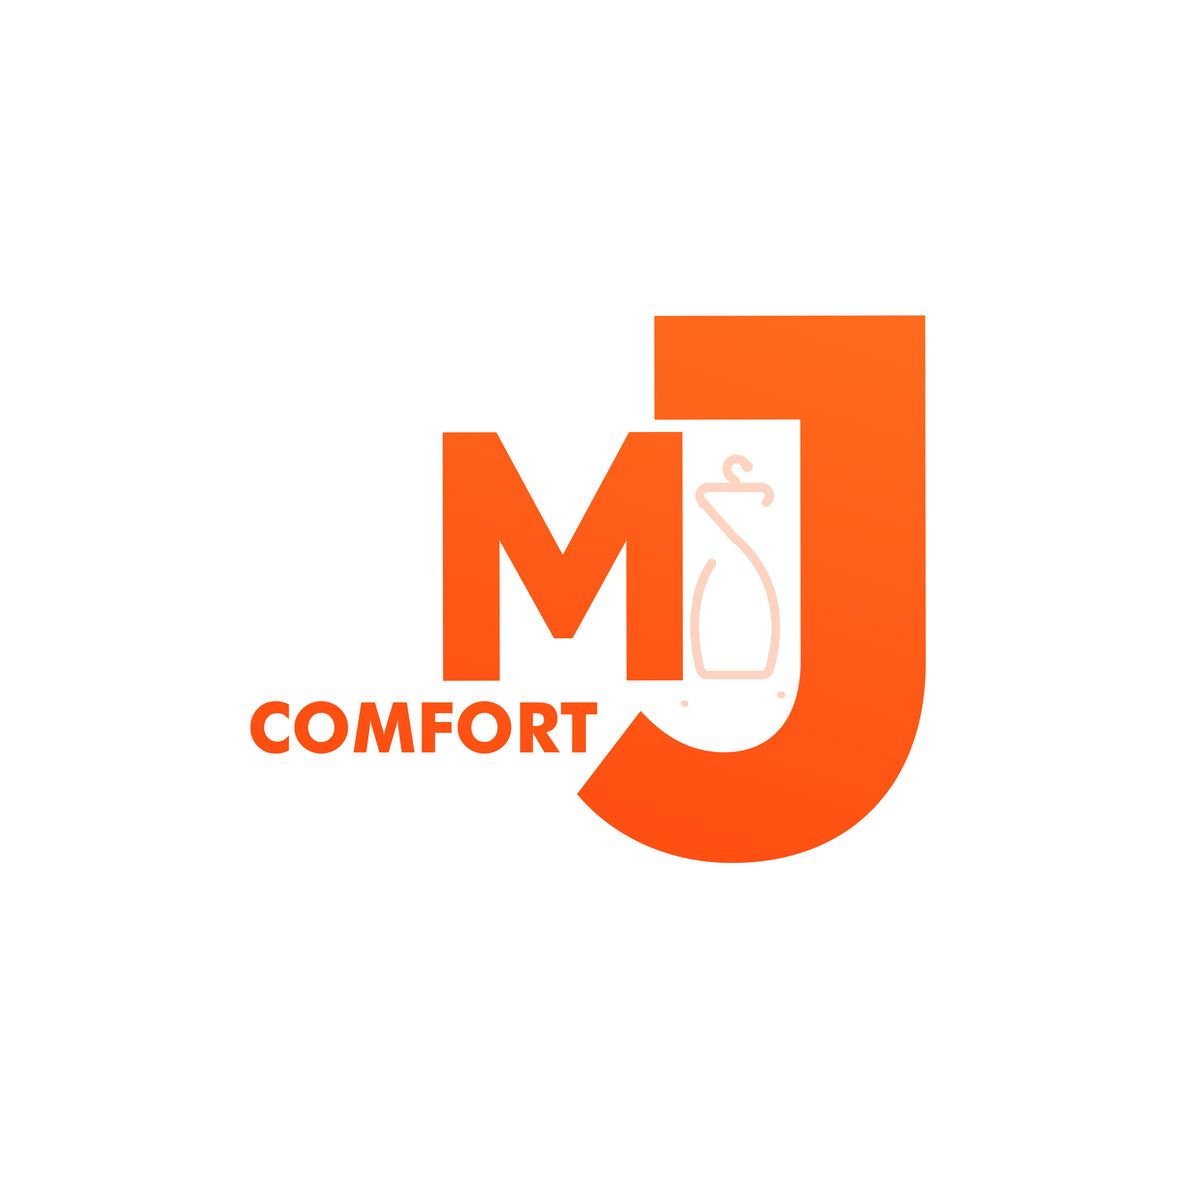 MJ Comfort